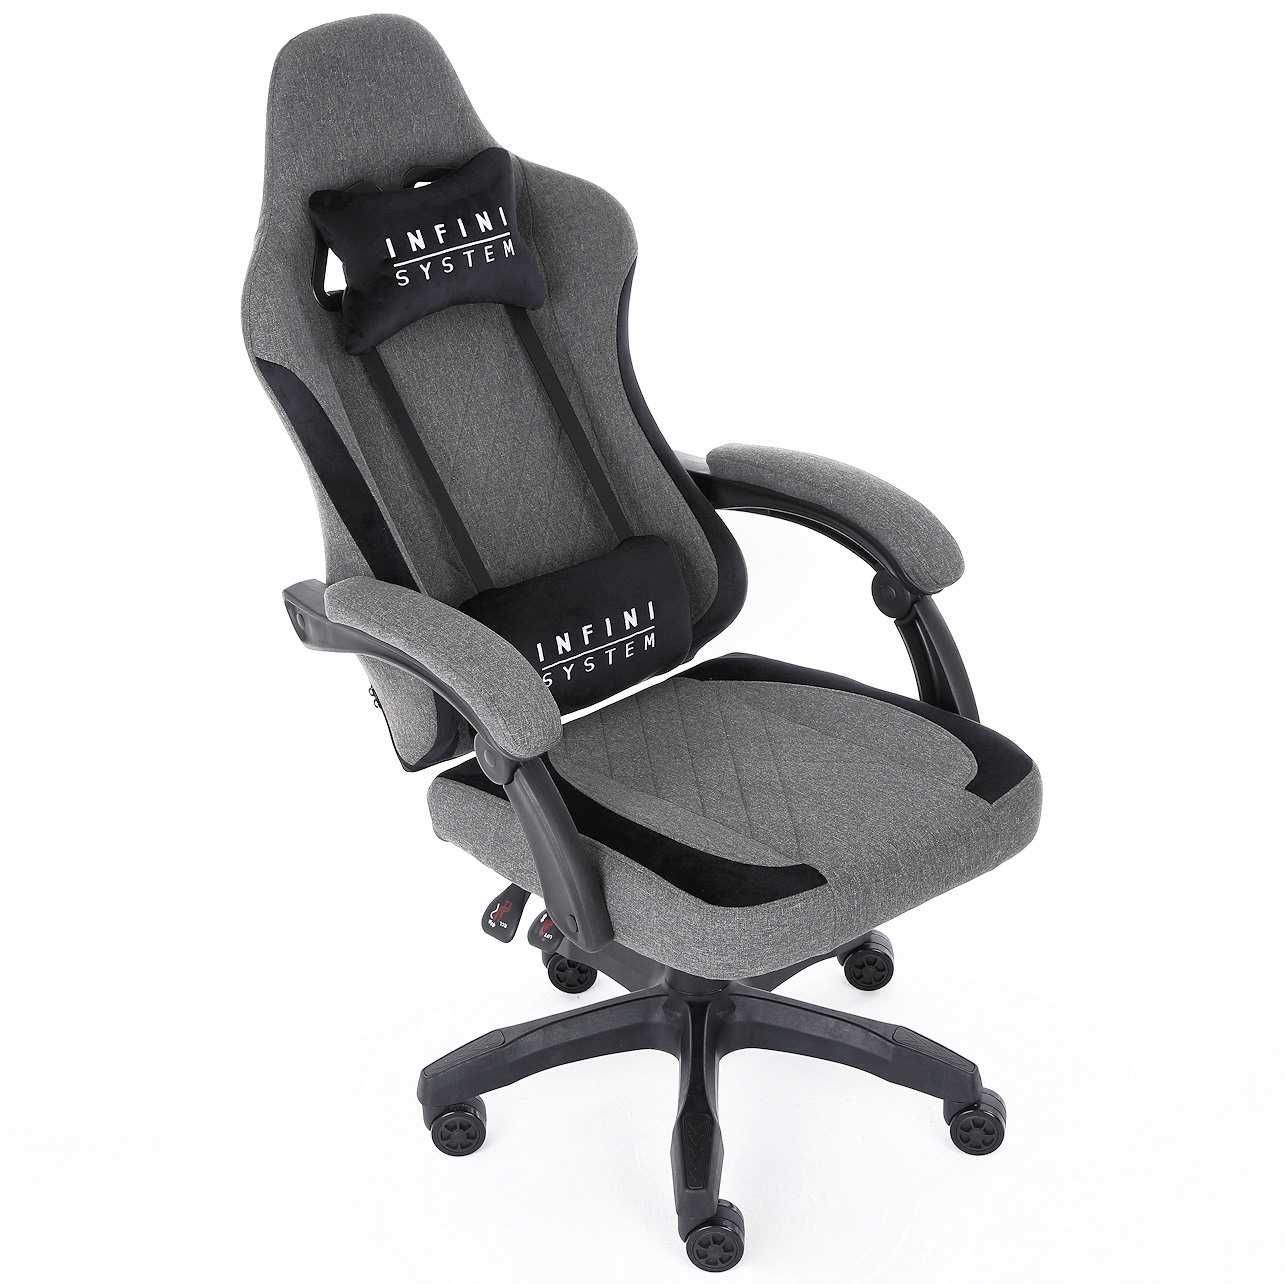 Krzesło Gamingowe Fotel Infini System Dark Gray Tkanina